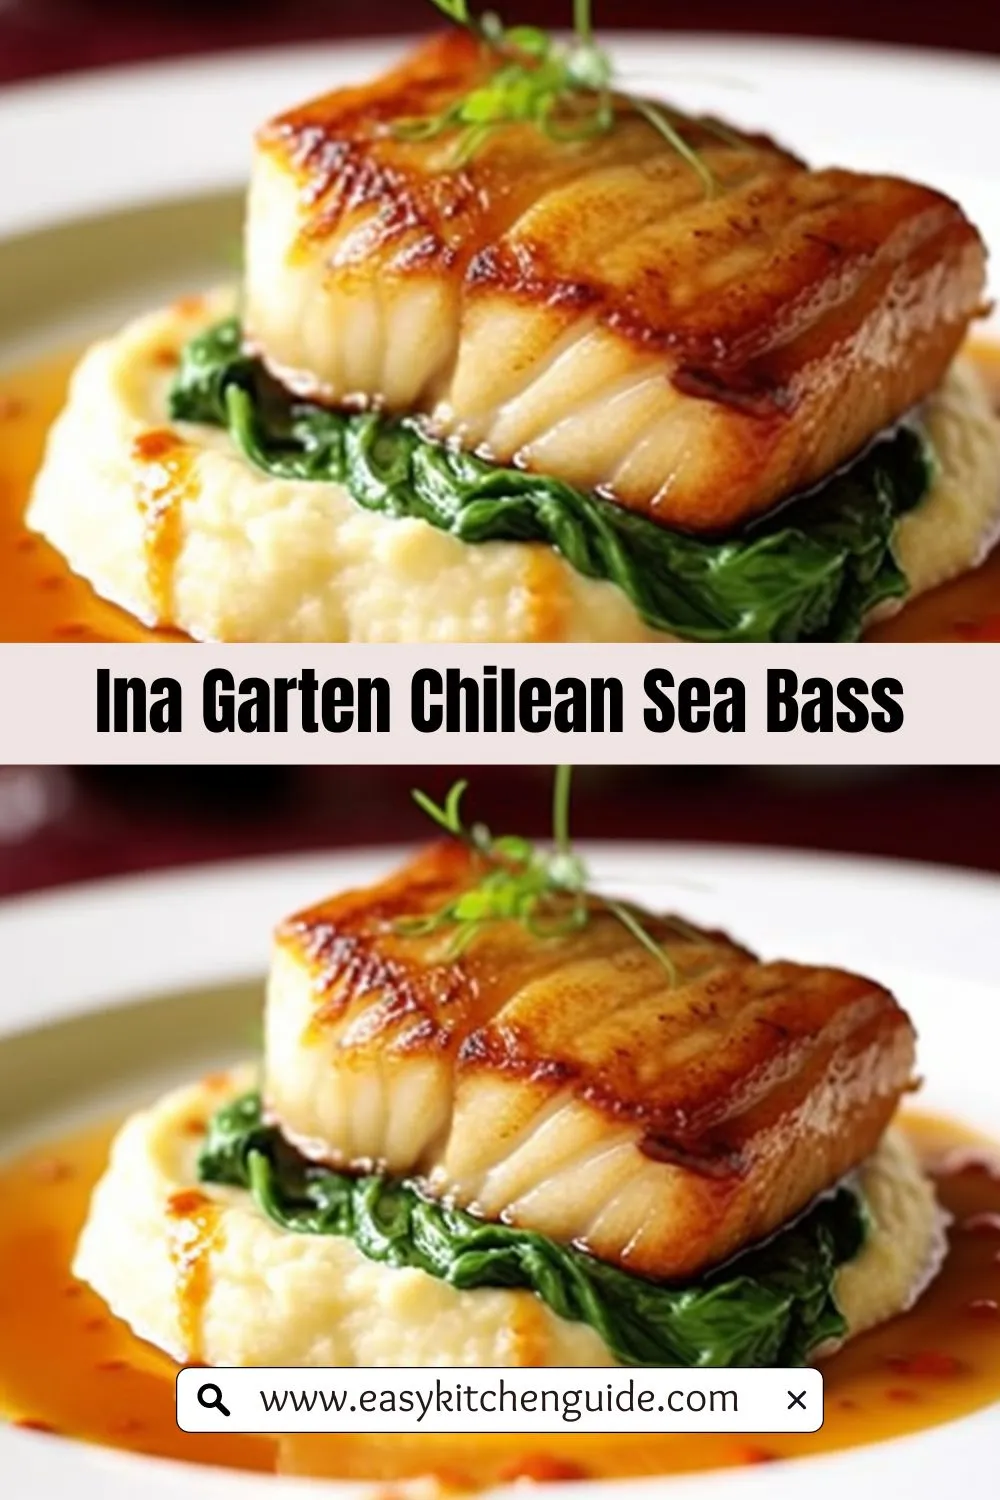 Ina Garten Chilean Sea Bass